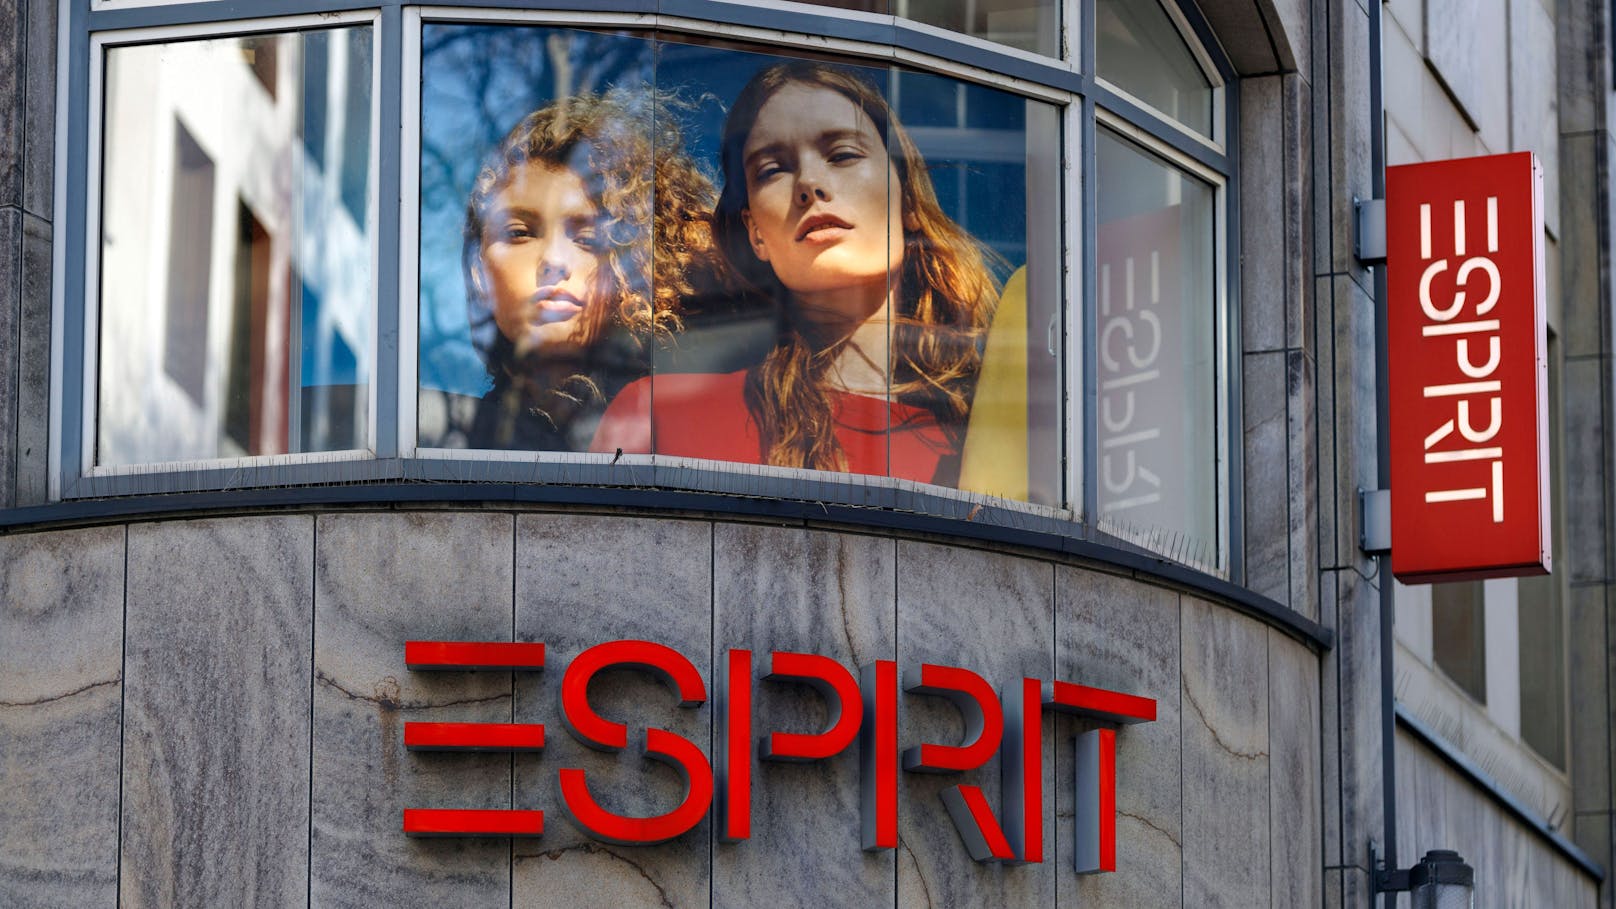 Pleite! Modekonzern "Esprit" meldet Insolvenz an